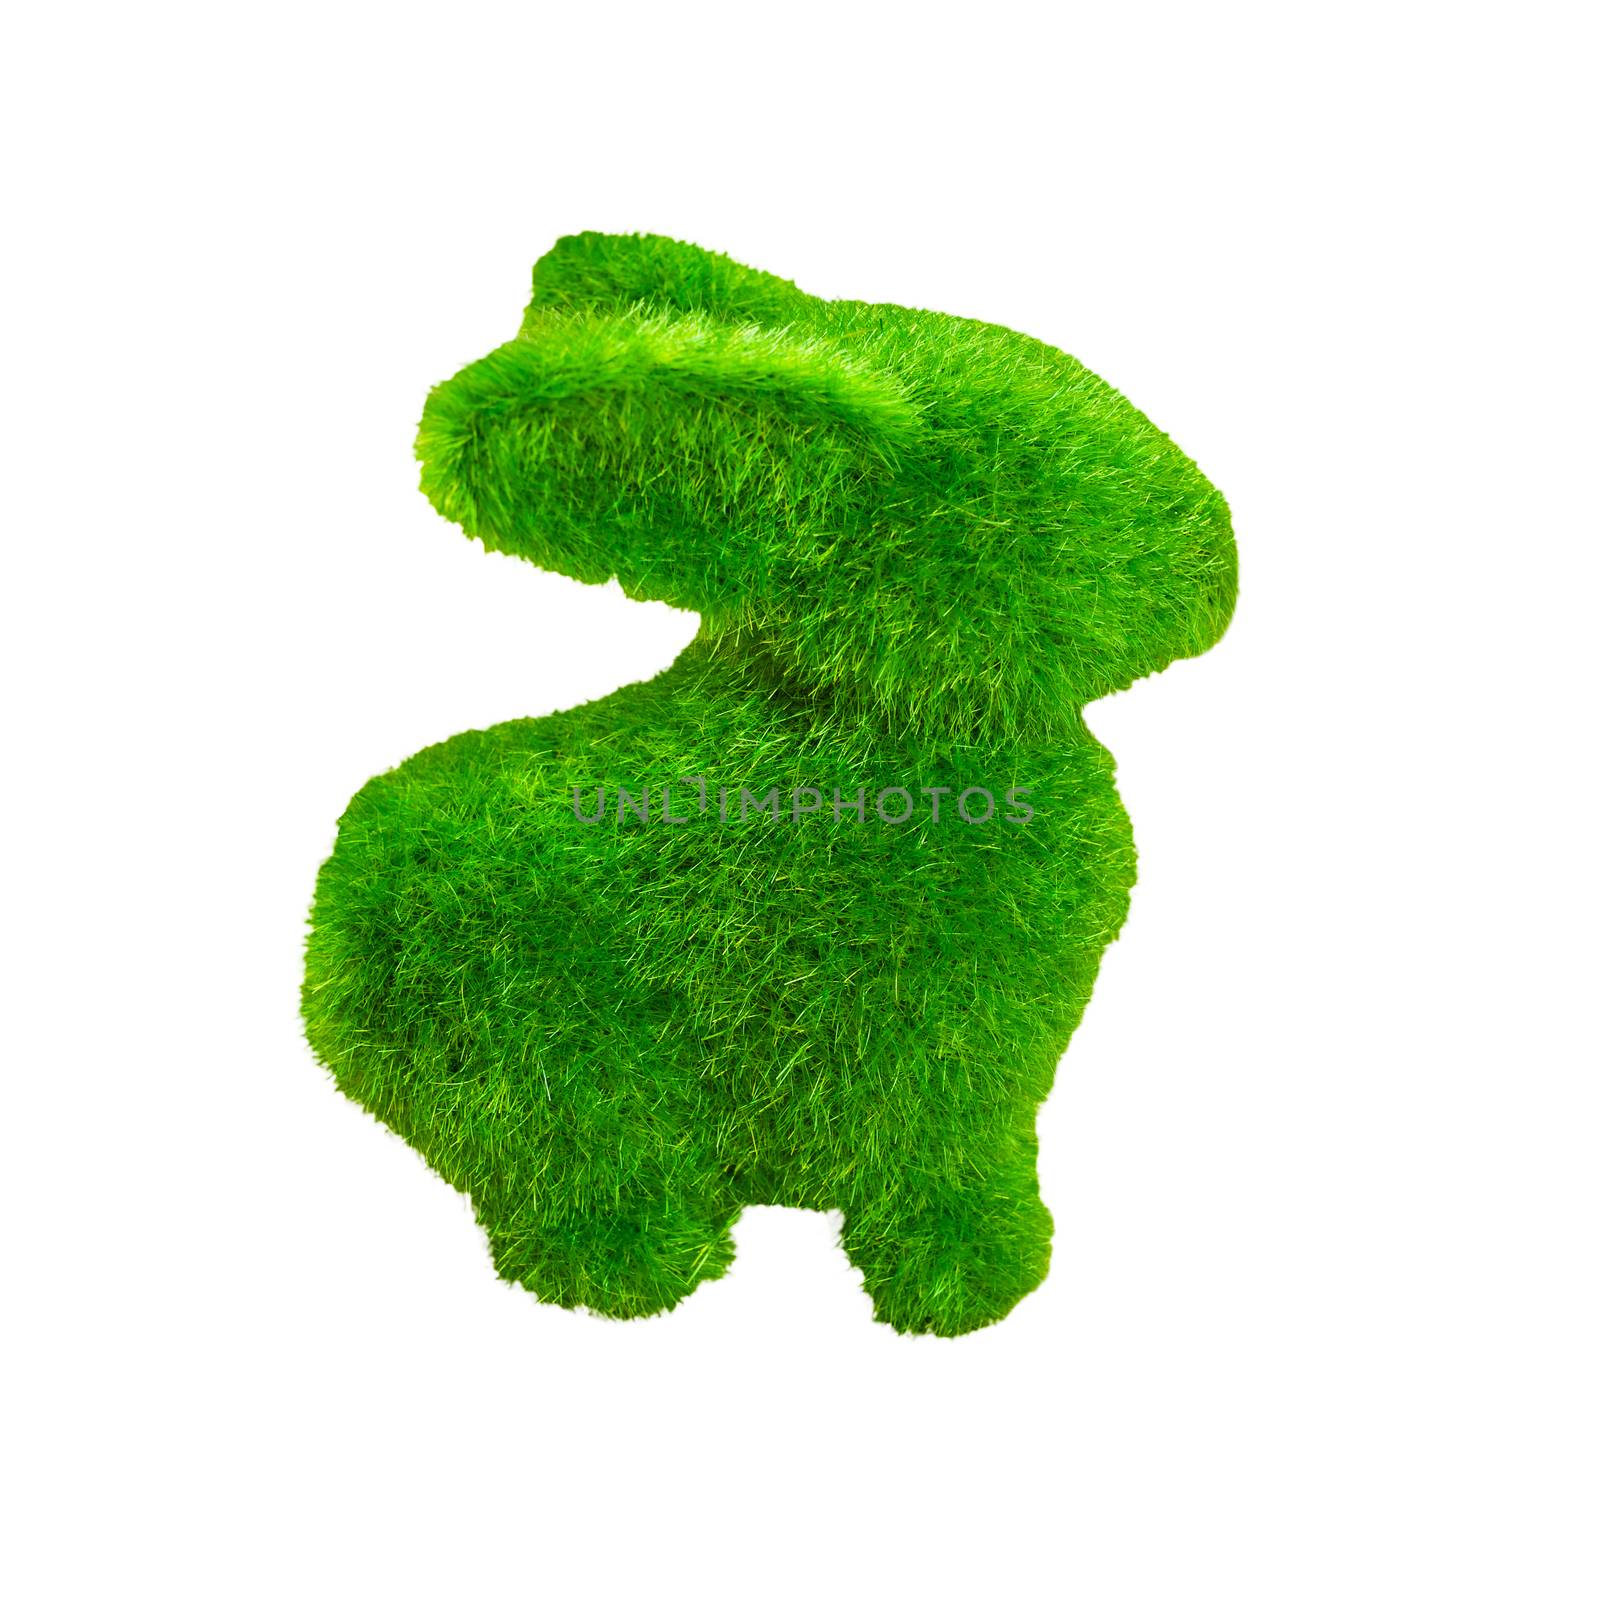 Little green rabbit on wooden floor, made from artificial grass  by FrameAngel